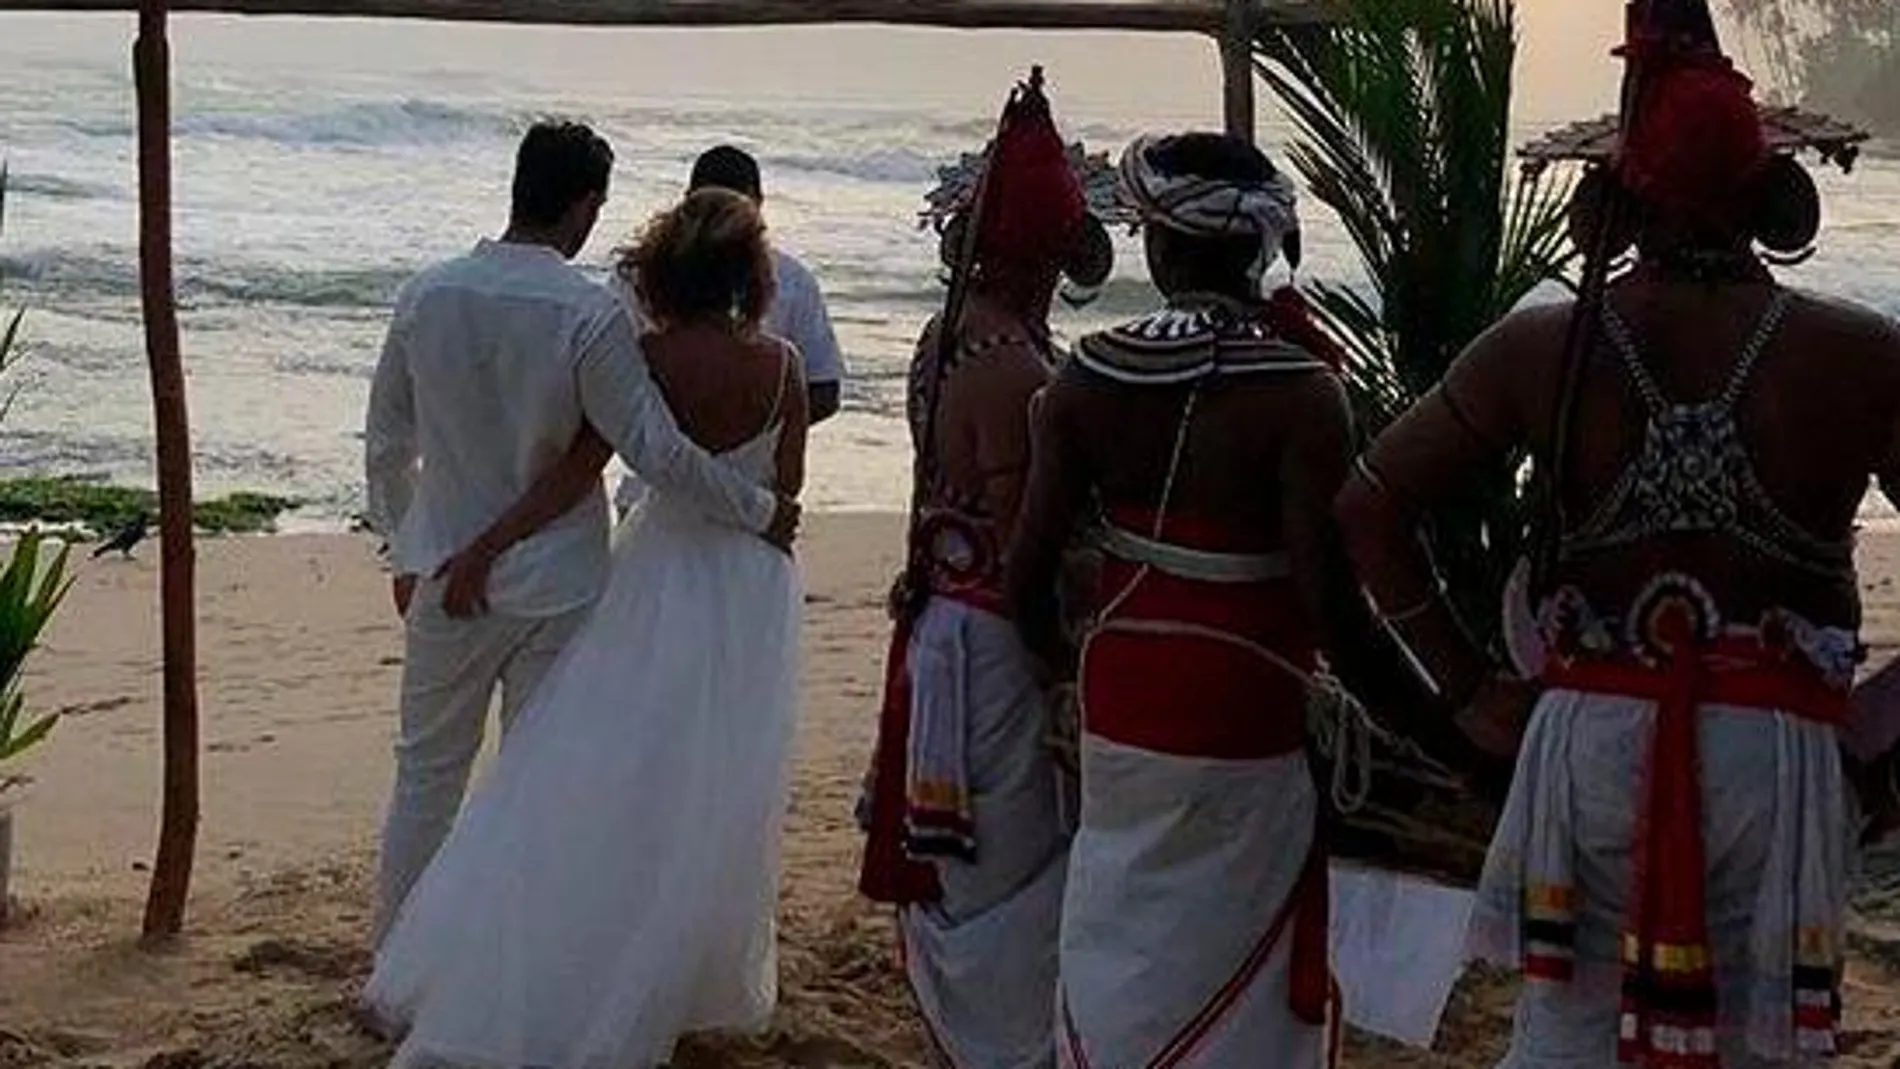 Imagen publicada por María Patiño en Instagram de su boda en Sry Lanka